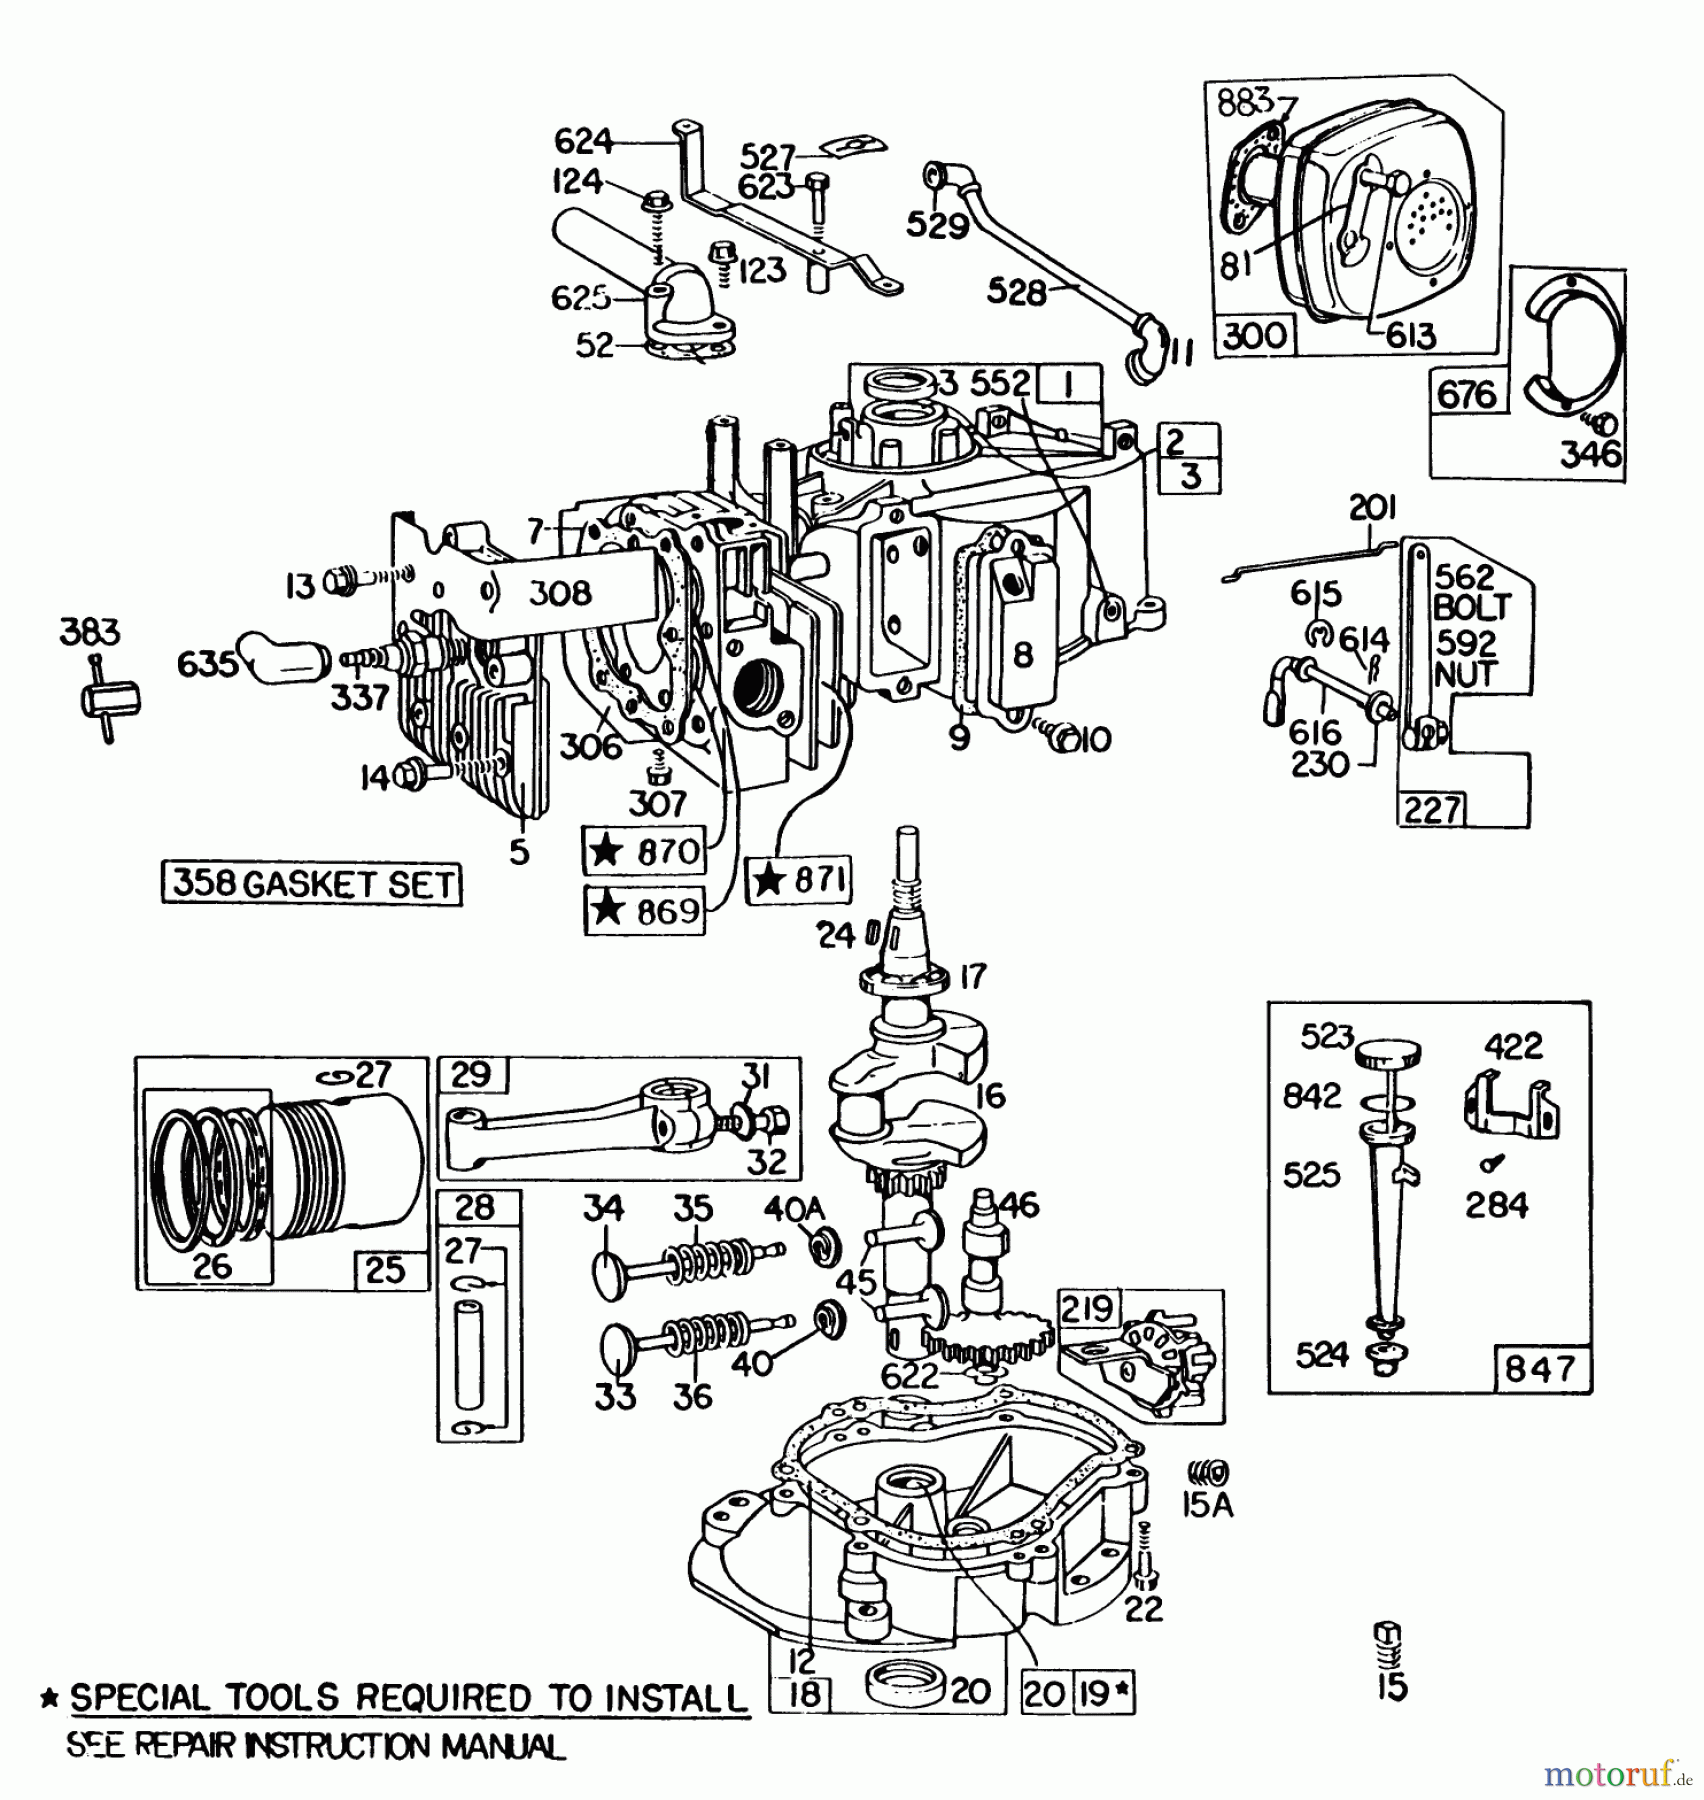  Toro Neu Mowers, Walk-Behind Seite 2 22015 - Toro Lawnmower, 1985 (5000001-5999999) ENGINE BRIGGS & STRATTON MODEL 131922-0163-01 #2